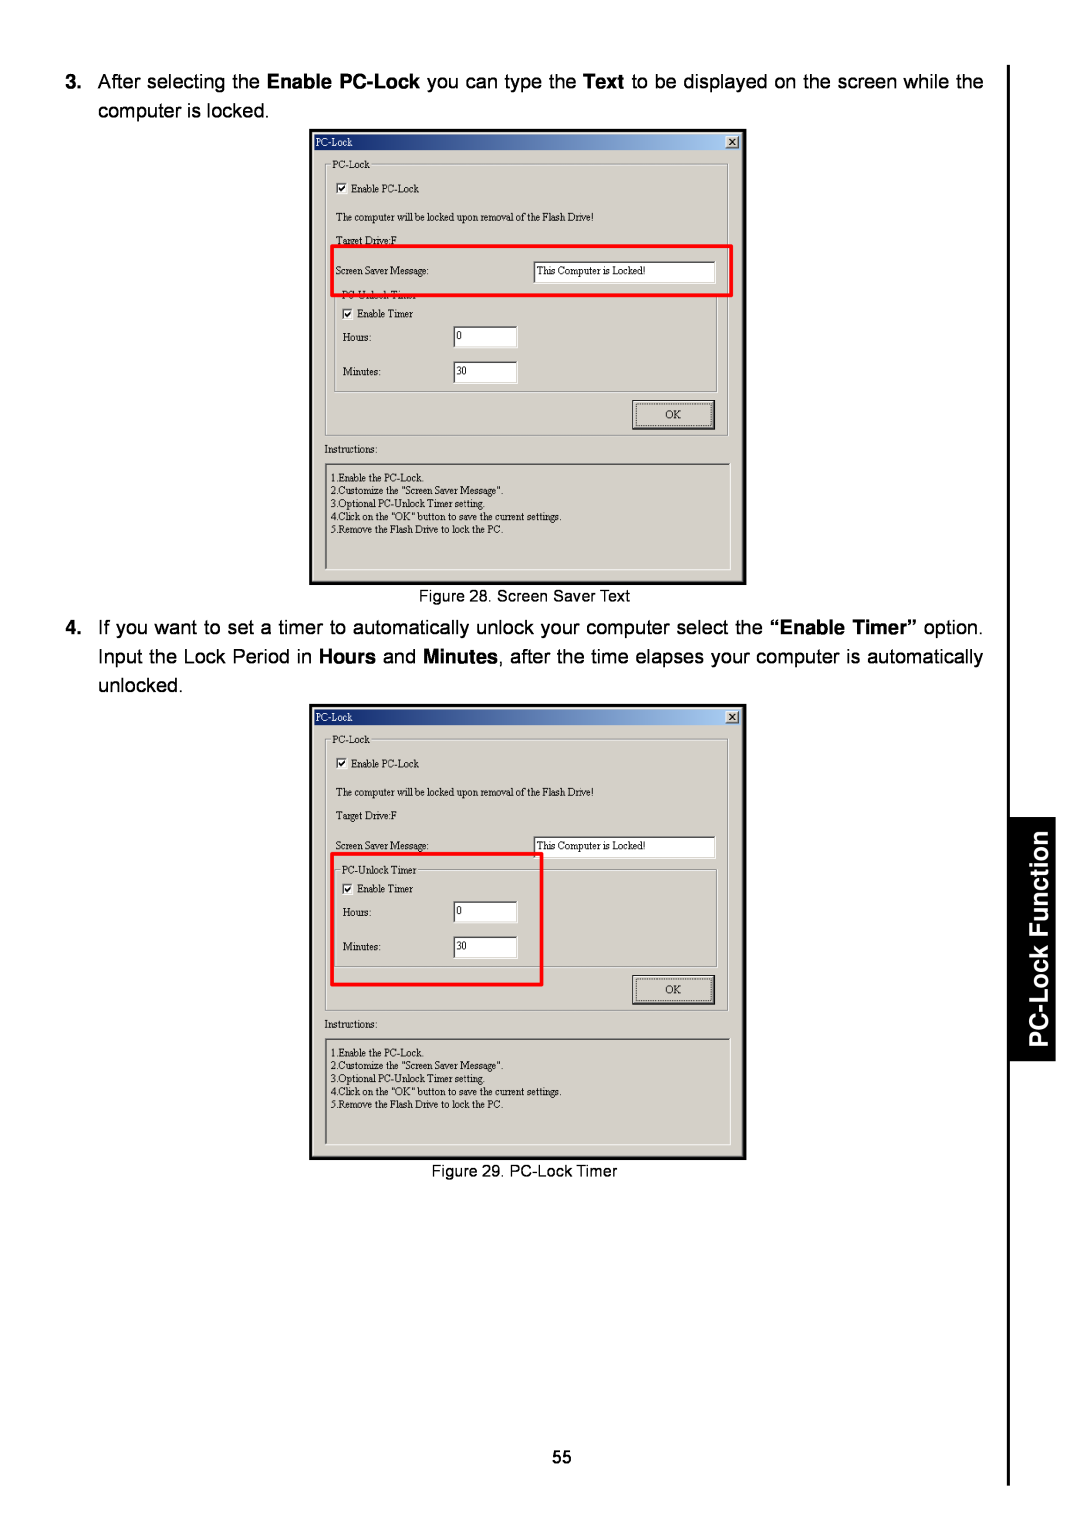 Transcend Information 820 user manual PC-LockFunction, Screen Saver Text, PC-LockTimer 